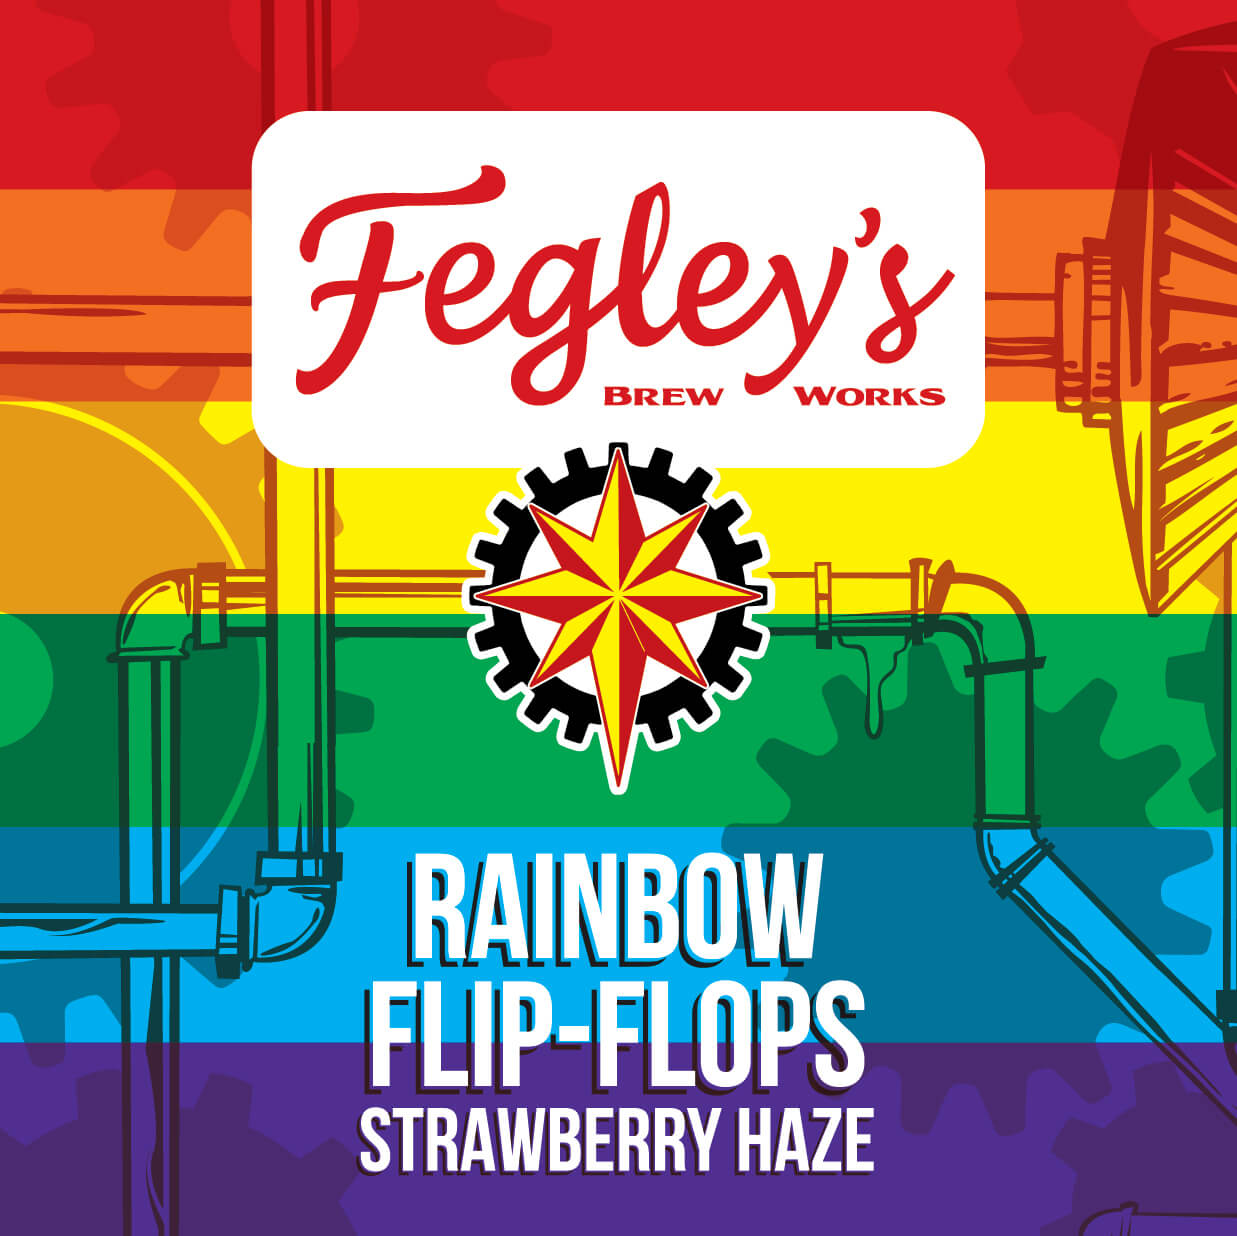 Fegley's Rainbow Flip-Flops Strawberry Hazy